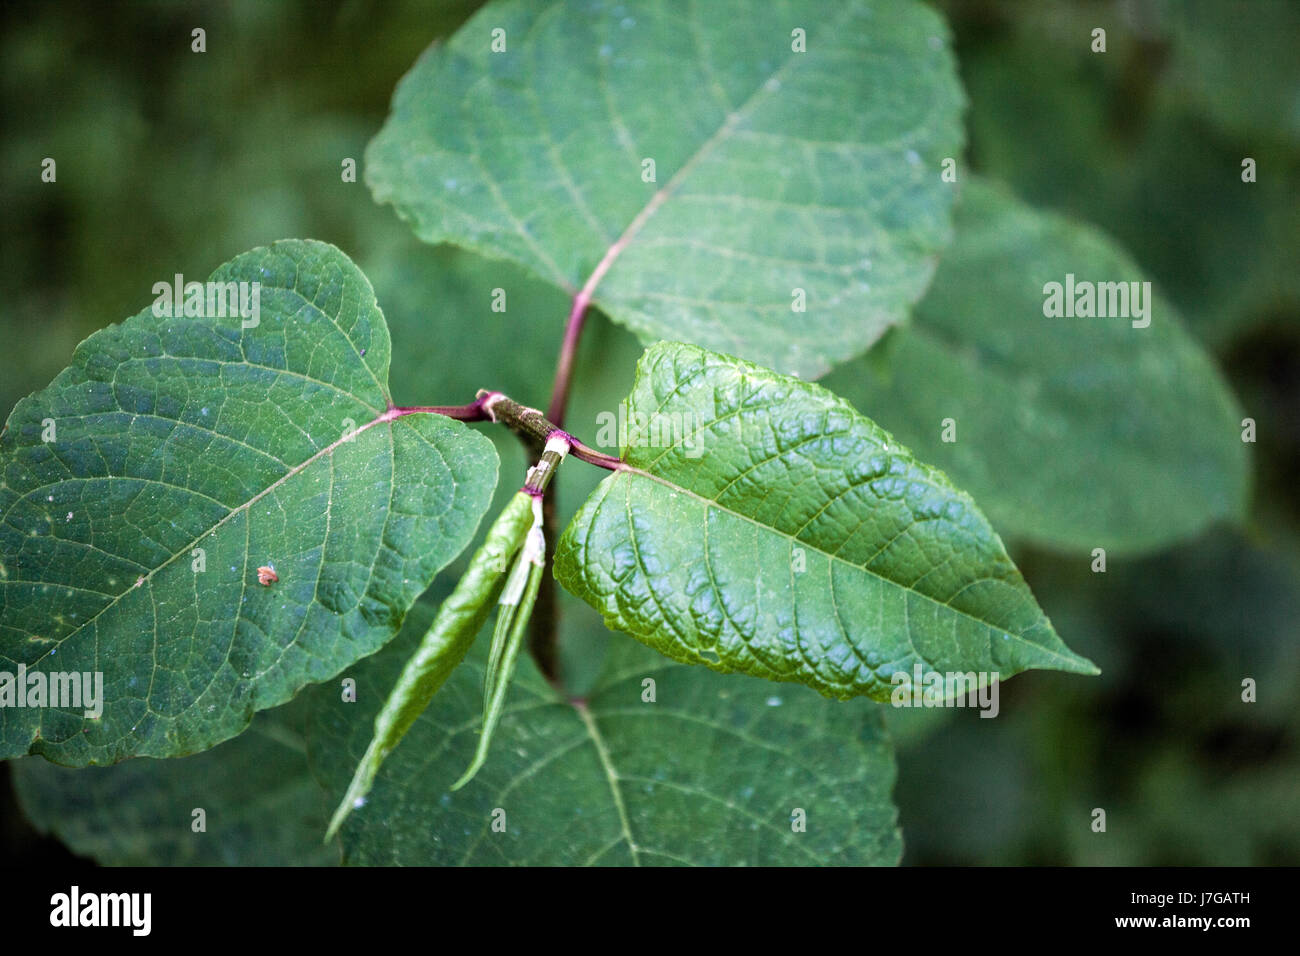 Knotweed Fallopia sachalinensis gigante, Reynoutria sachalinensis, hojas jóvenes, una planta invasora Foto de stock